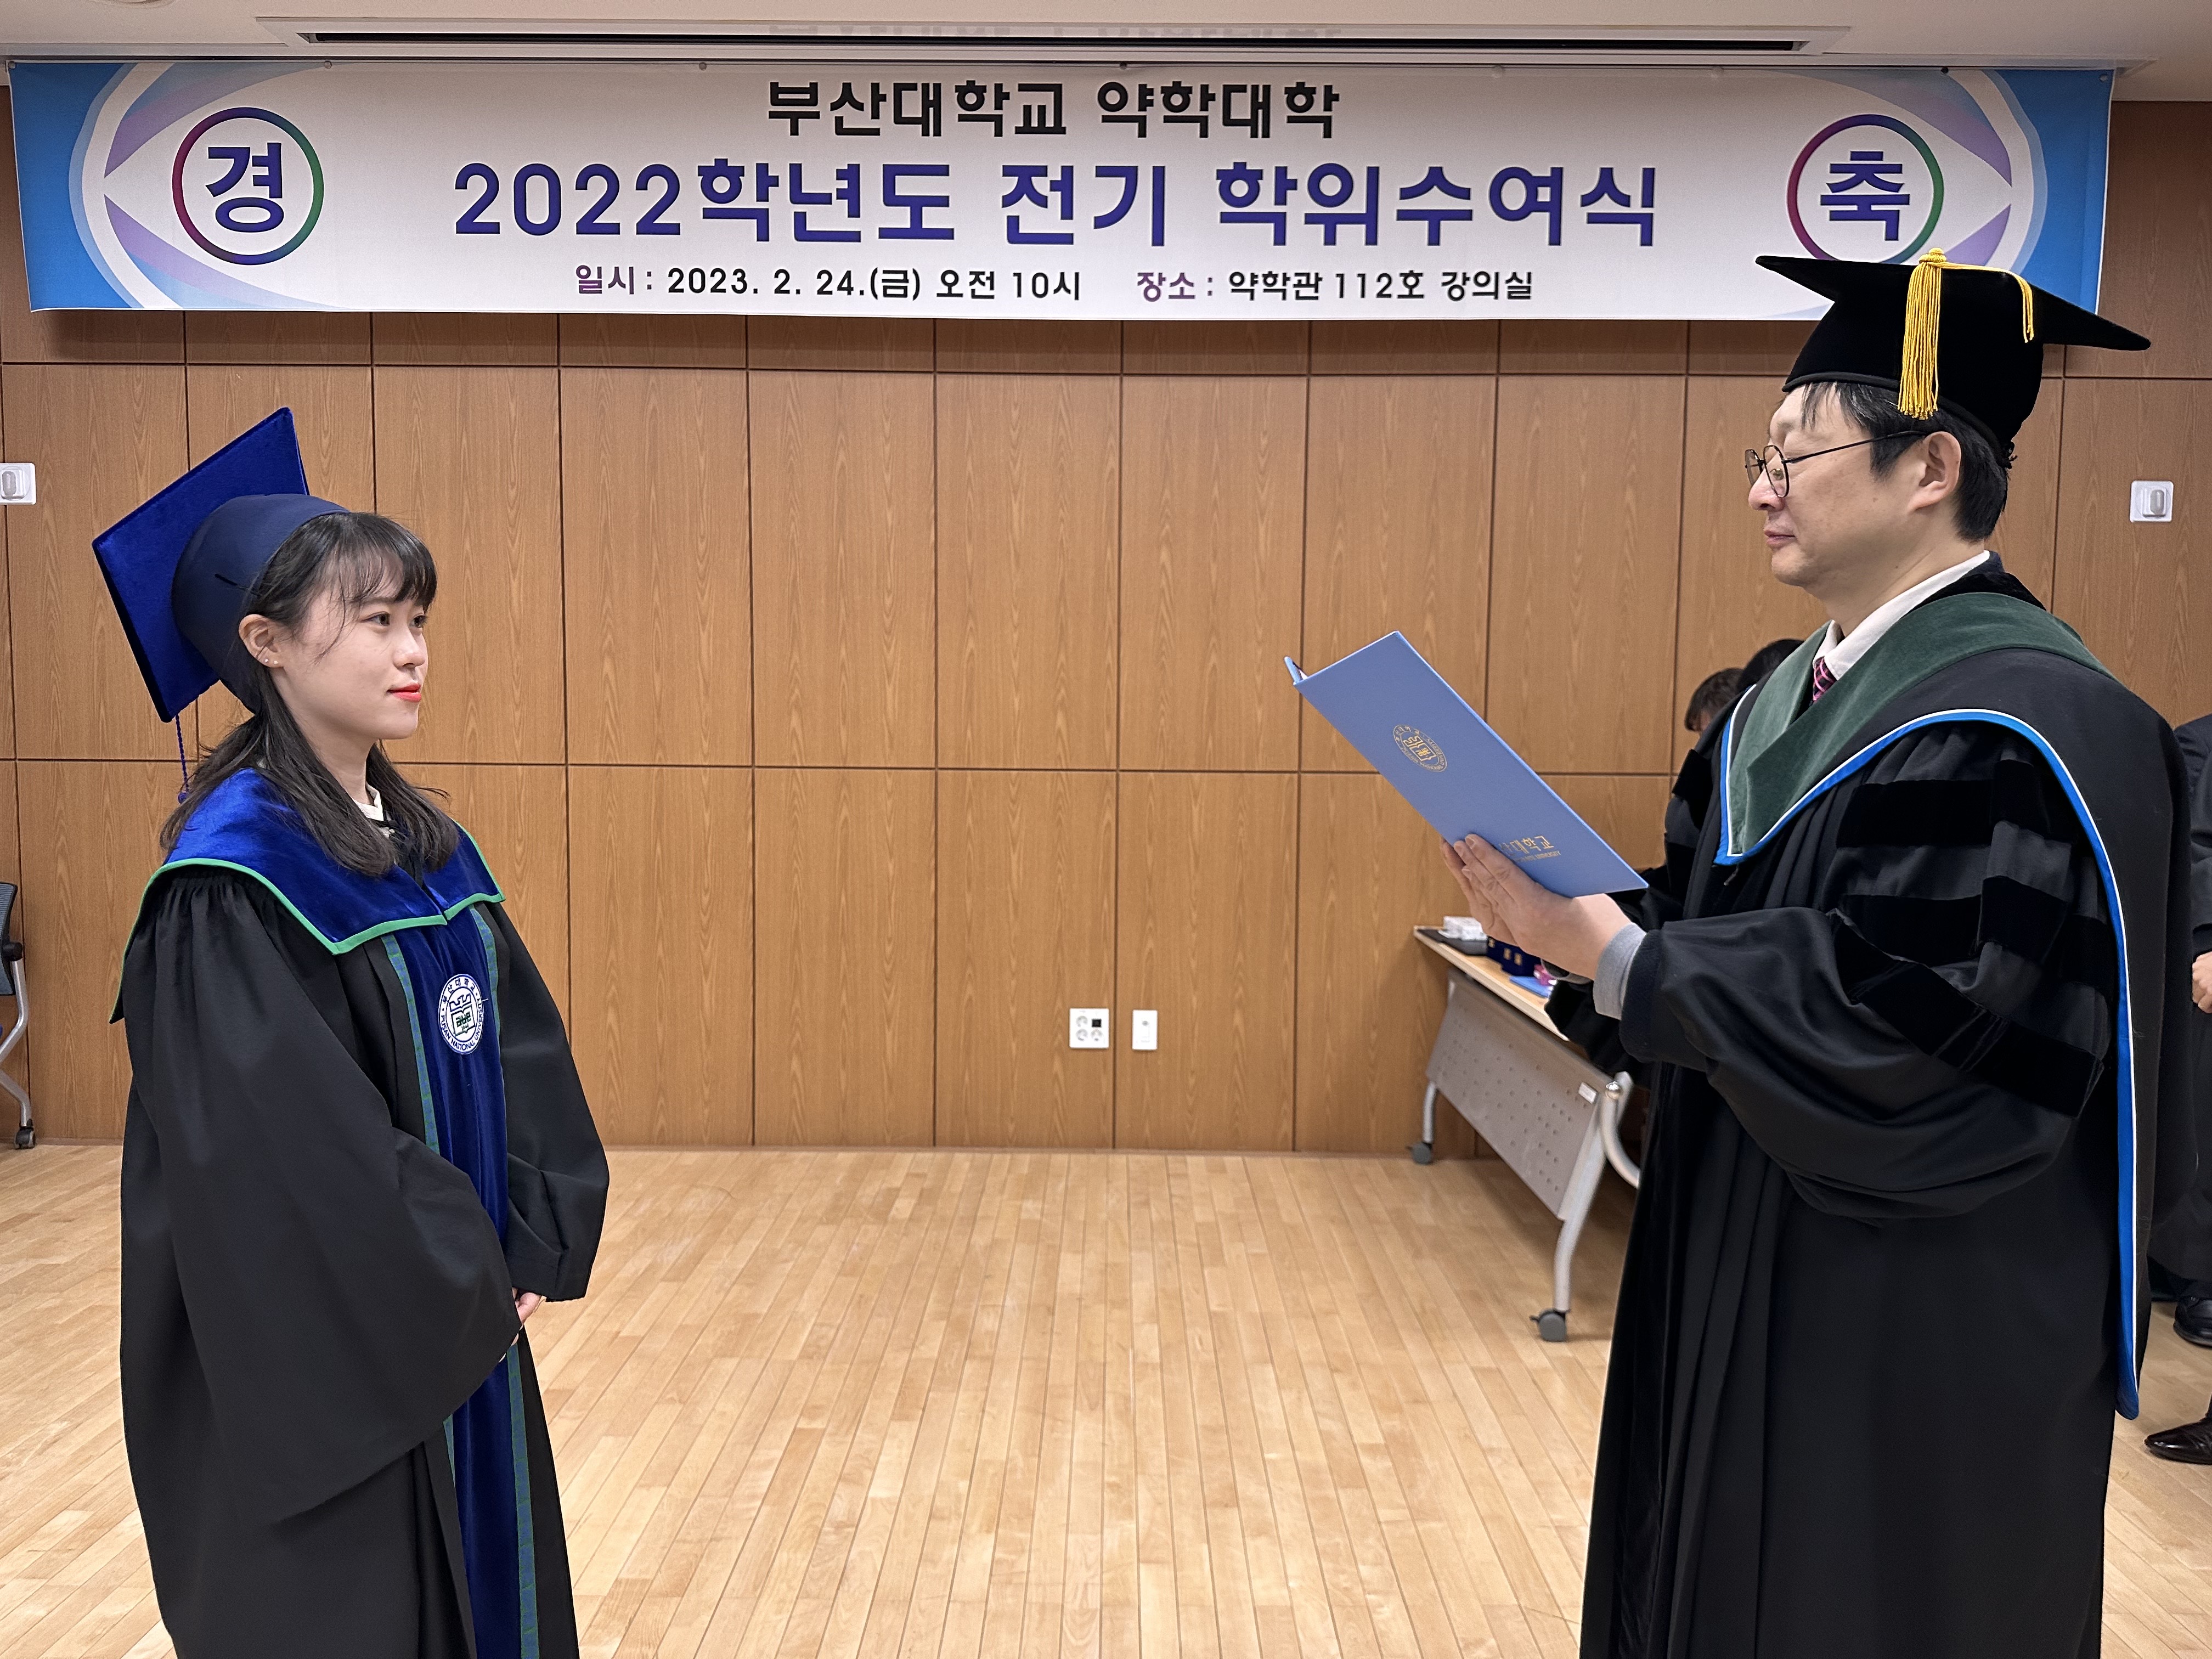 2022학년도 전기 학위수여식 - 이주환, 이지훈, 이진욱, 임주연 제약 임주연-학위수여사진 (7).JPG